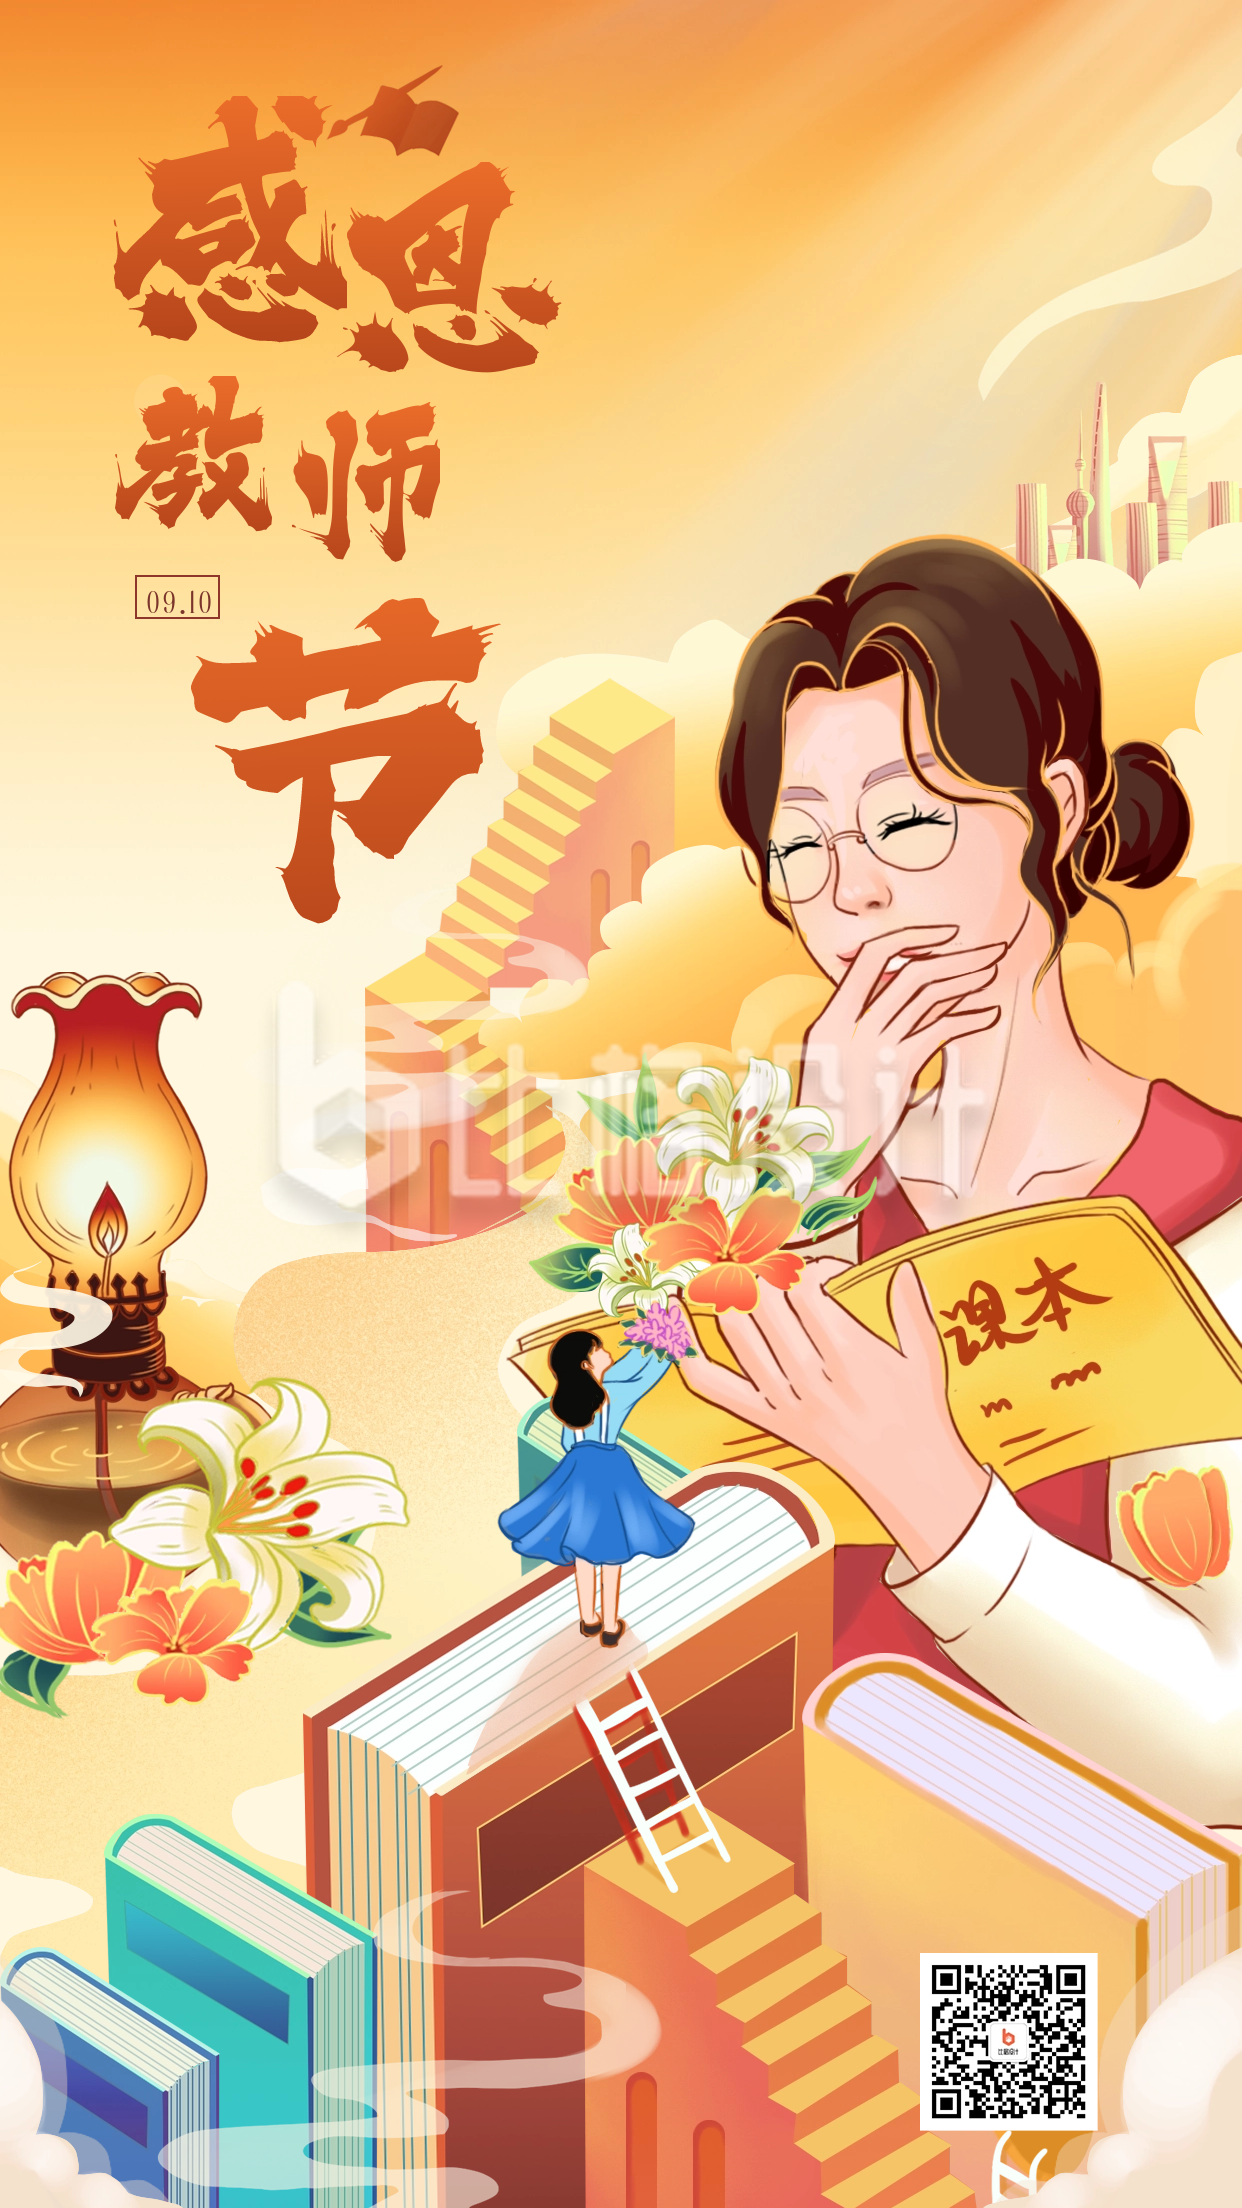 教师节节日祝福海报